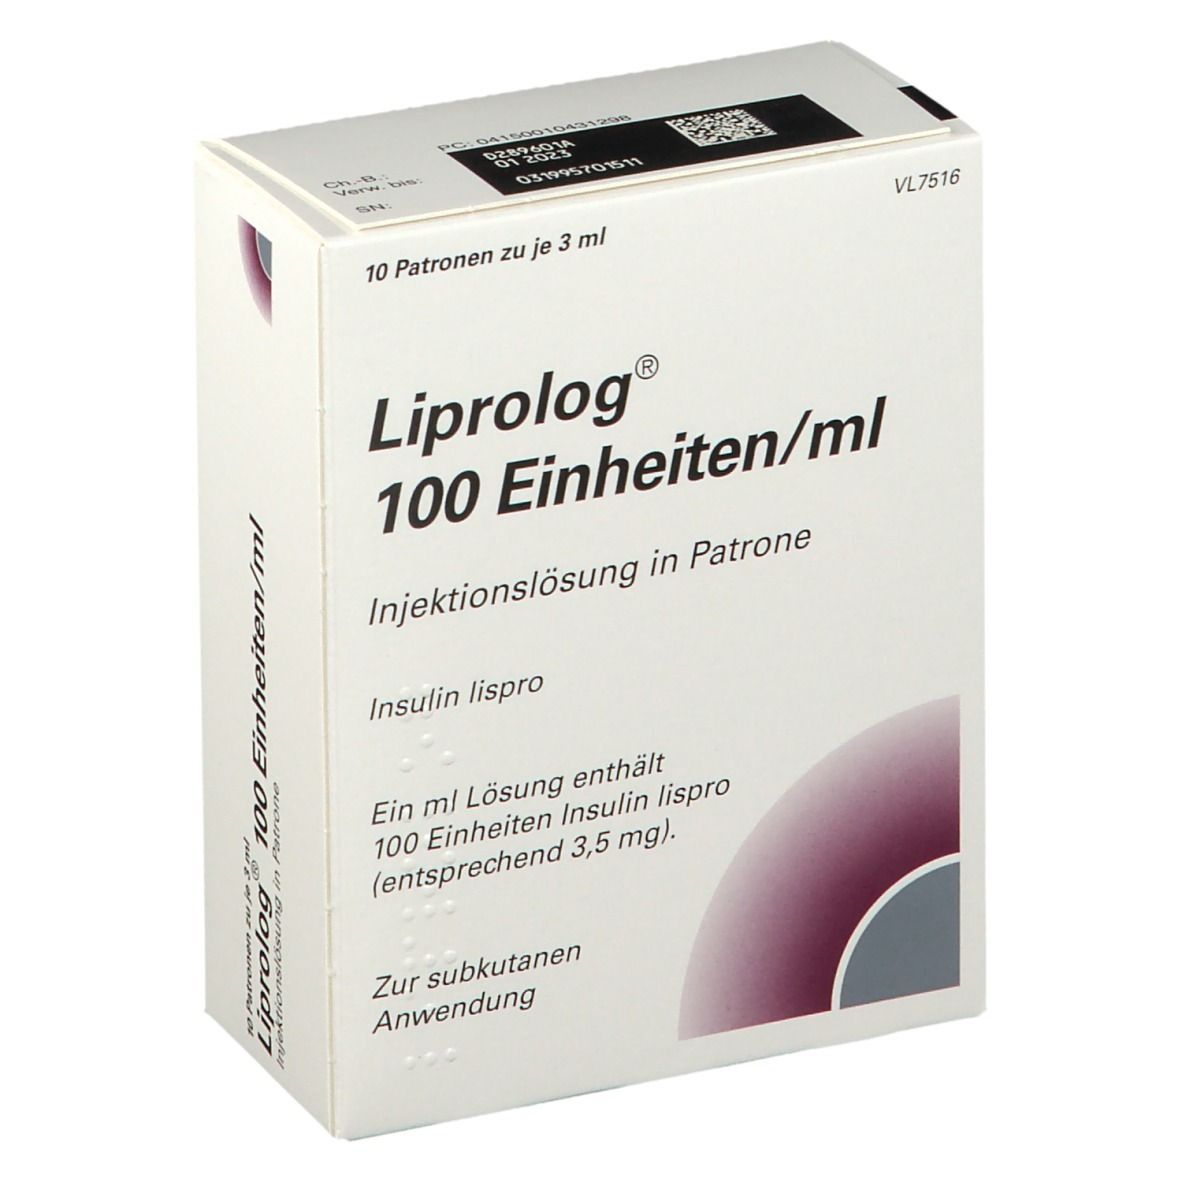 Liprolog 100 Einheiten/ml